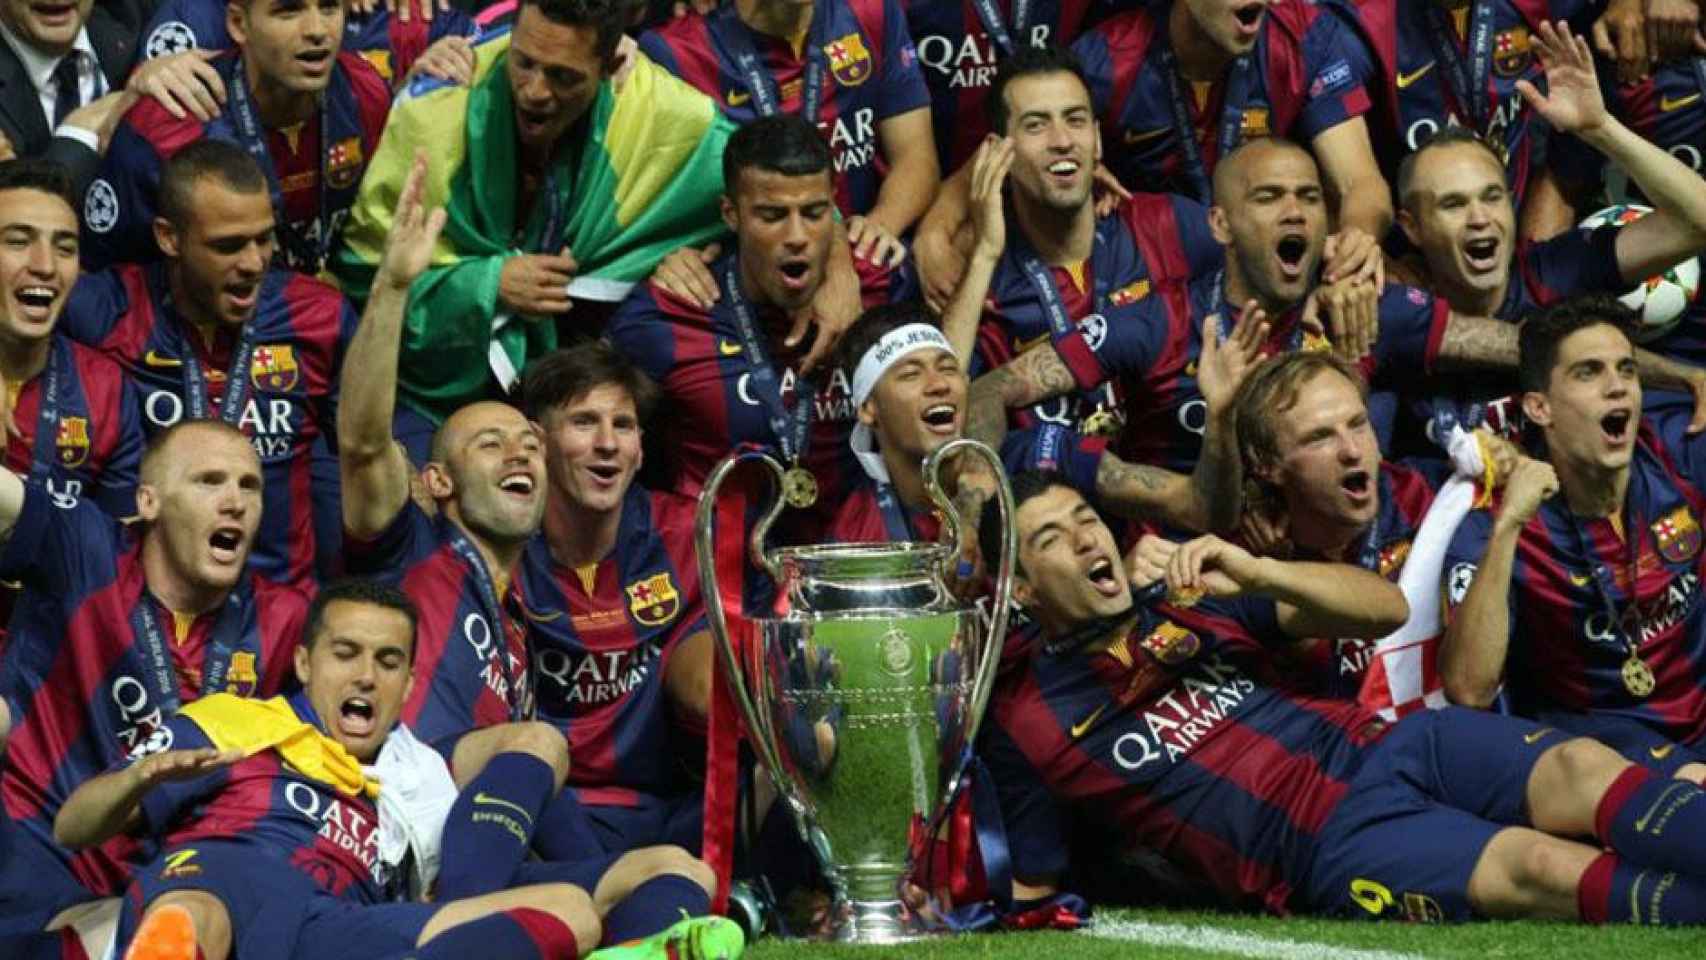 El Barça celebra la Champions League ganada en 2015